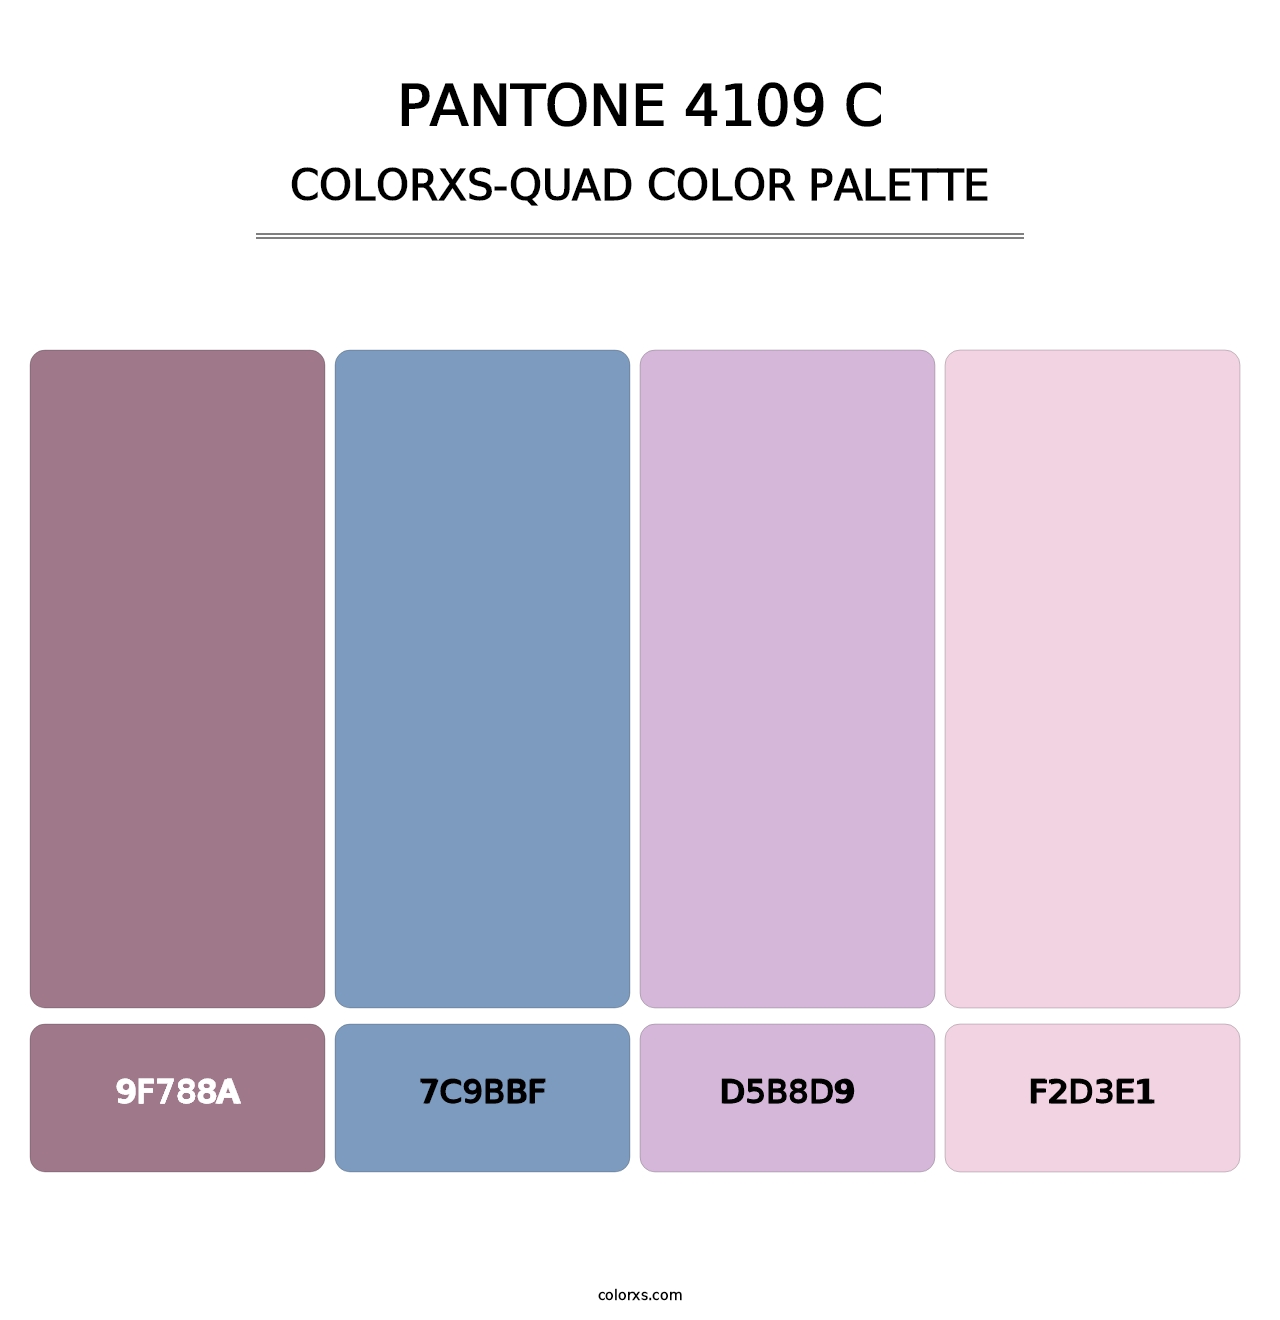 PANTONE 4109 C - Colorxs Quad Palette